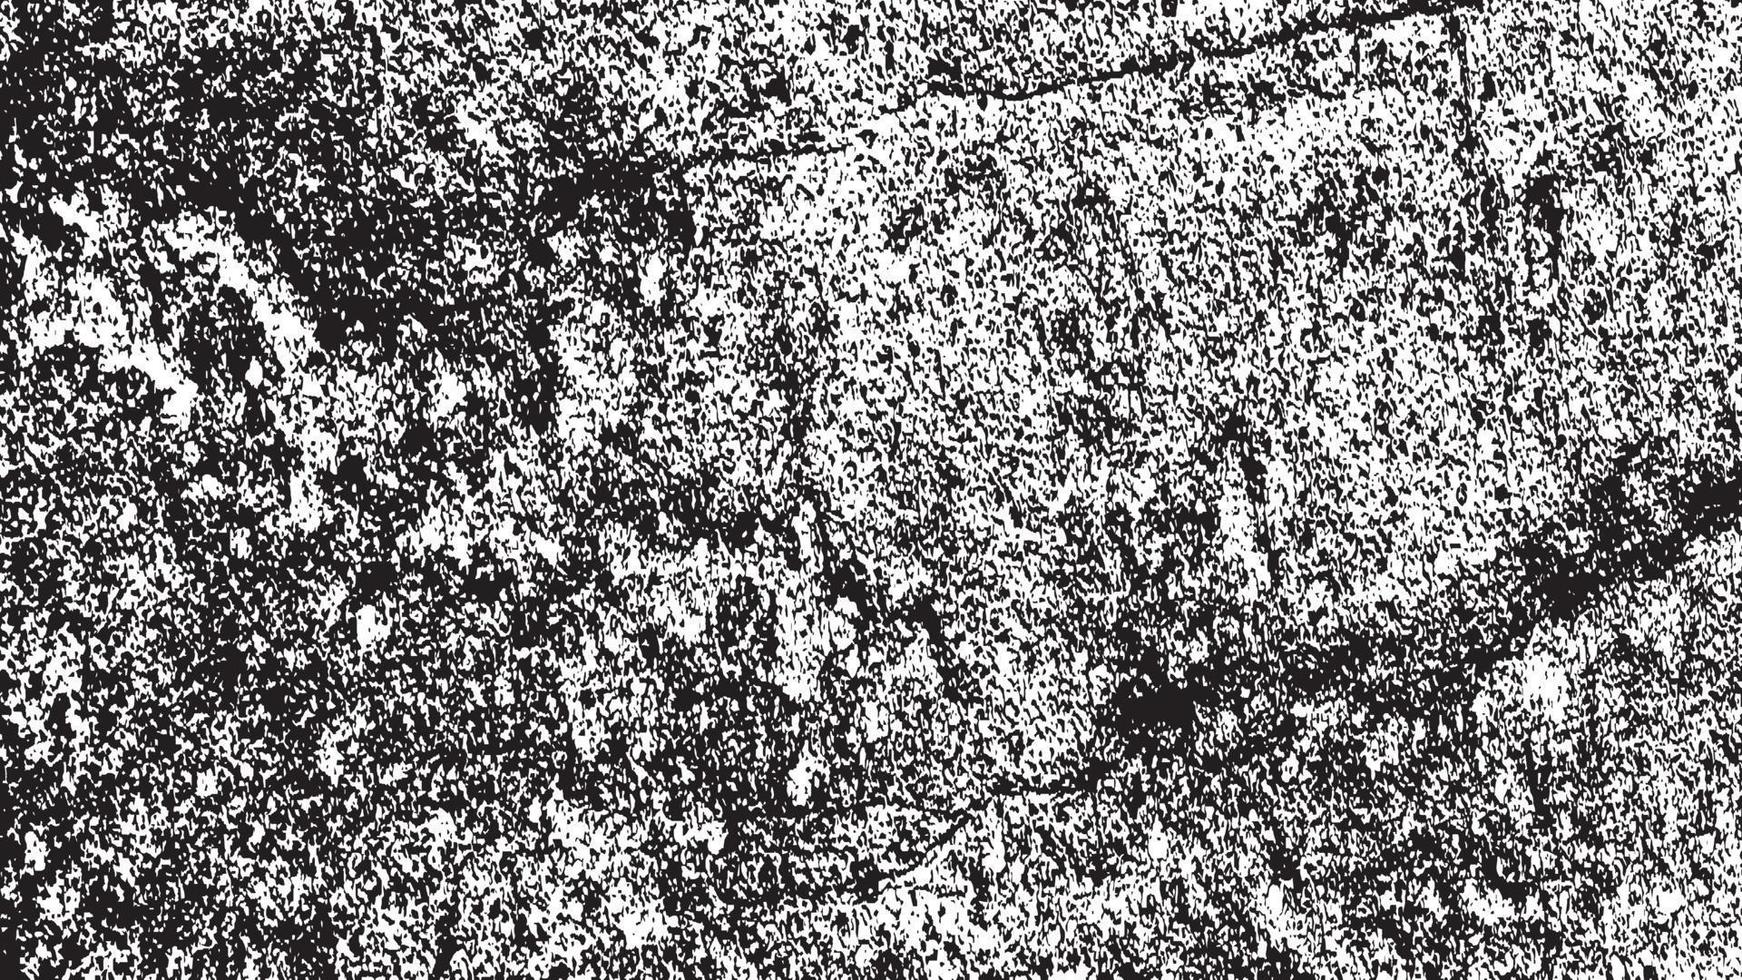 verontrust bedekking textuur, grunge achtergrond zwart wit abstract, vector verontrust aarde, structuur van chips, scheuren, krassen, slijtage, stof, aarde.